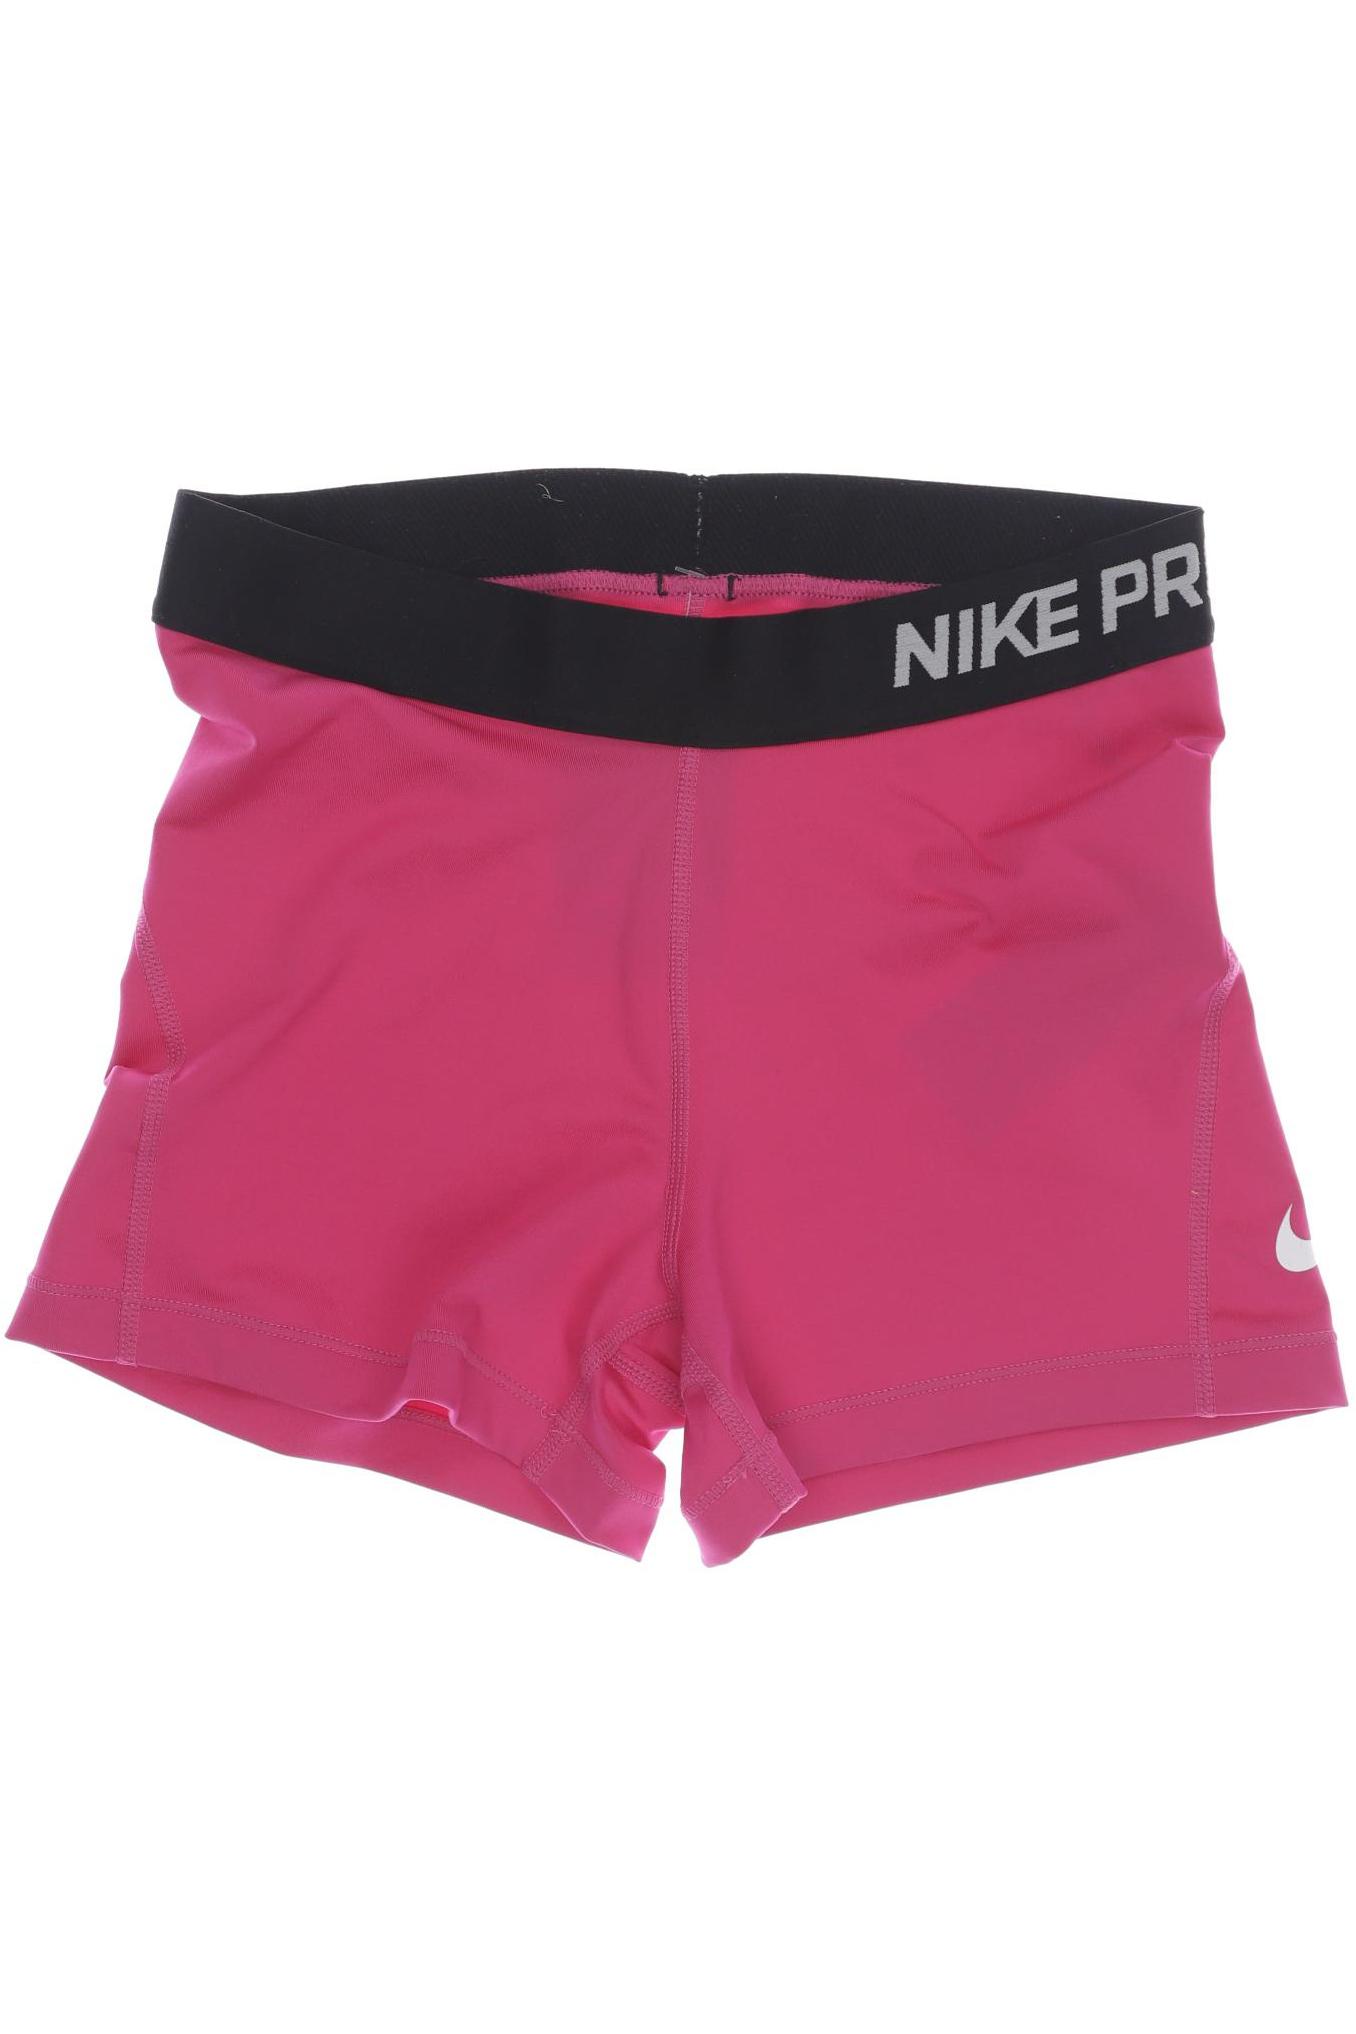 Nike Damen Shorts, pink von Nike